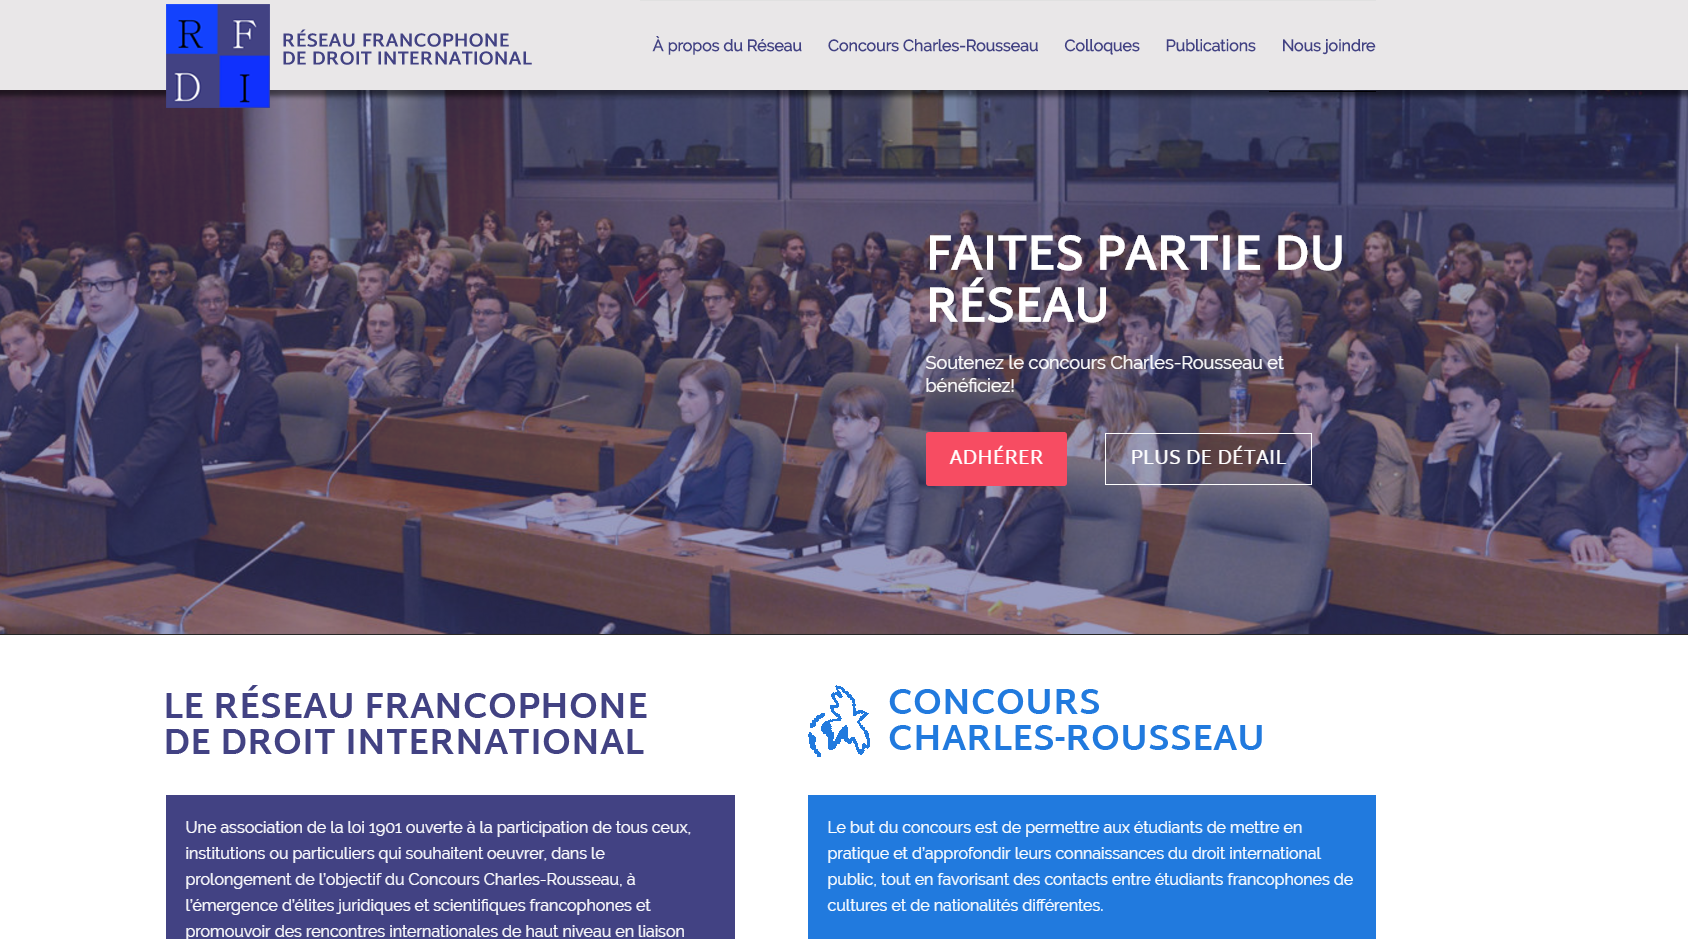 Réseau Francophone de Droit International website by Appwapp